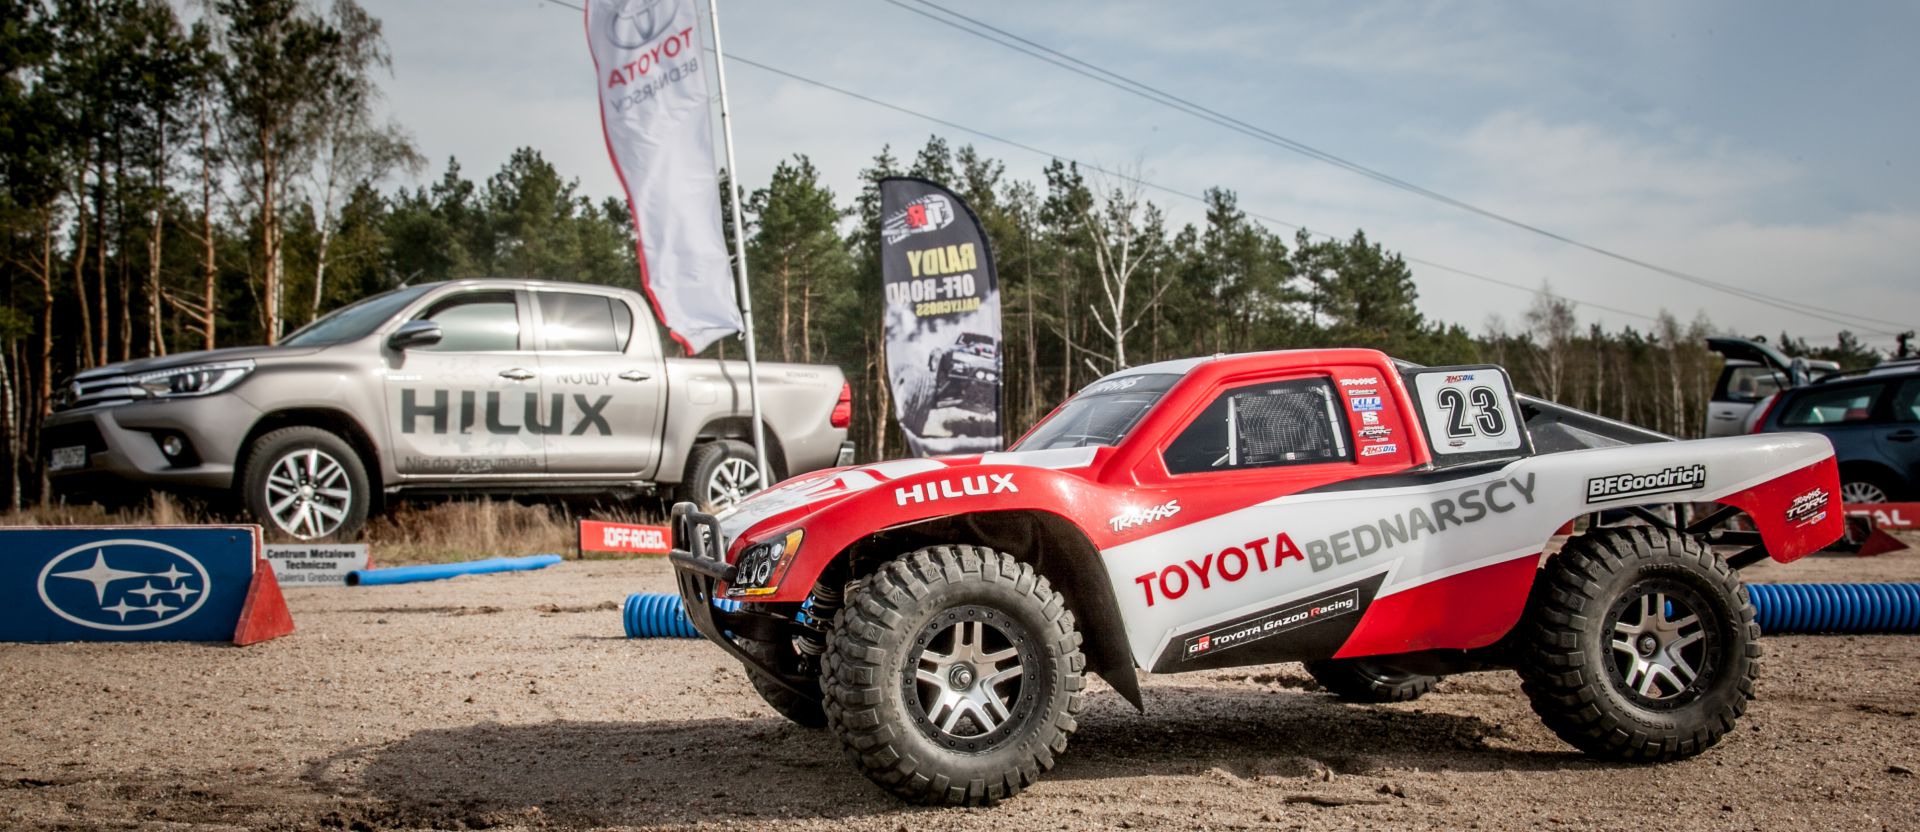 Toyota Bednarscy sponsorem Mistrzostw Polski Modeli RC